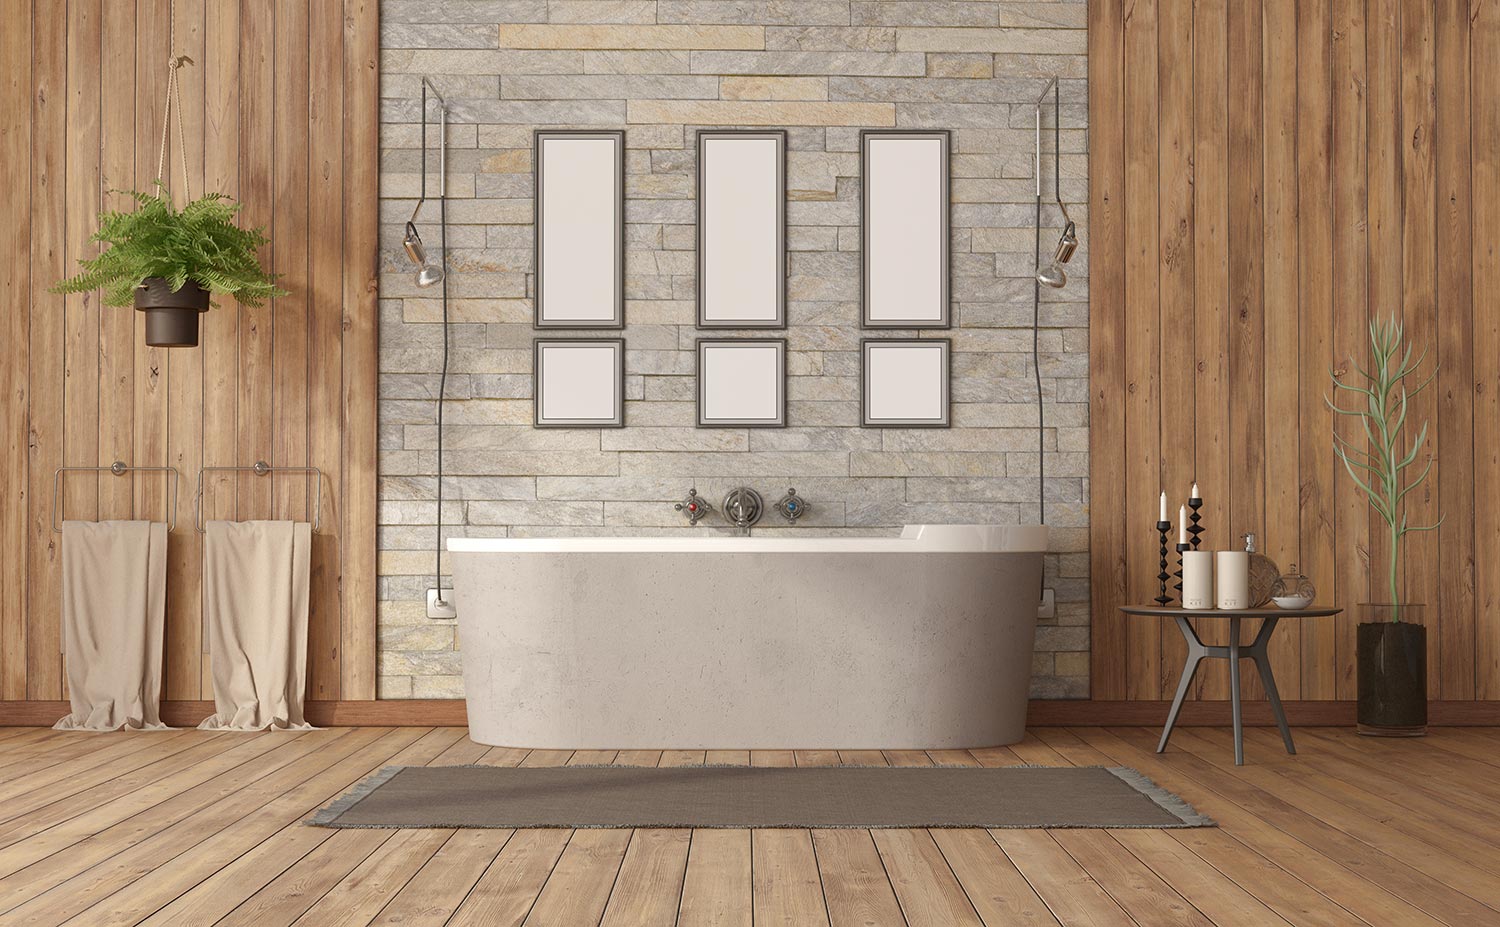 Elegant bathroom with bathtub against stone wall